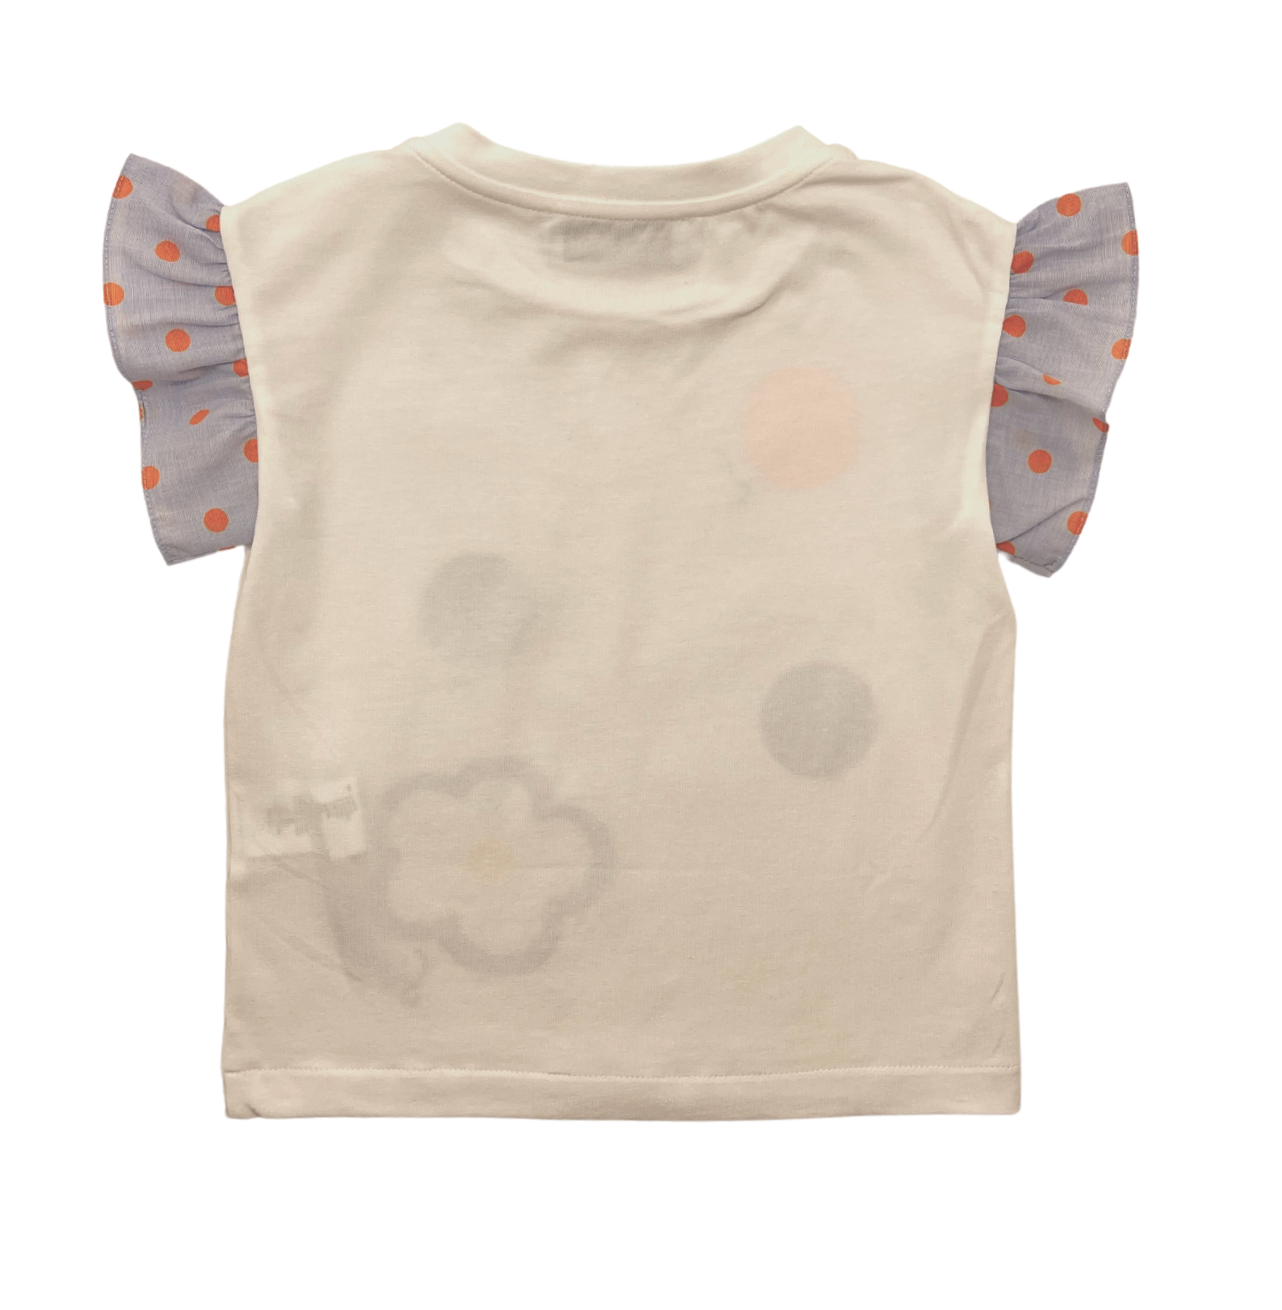 SIMONETTA - T-shirt fleur de marguerite - 2 ans